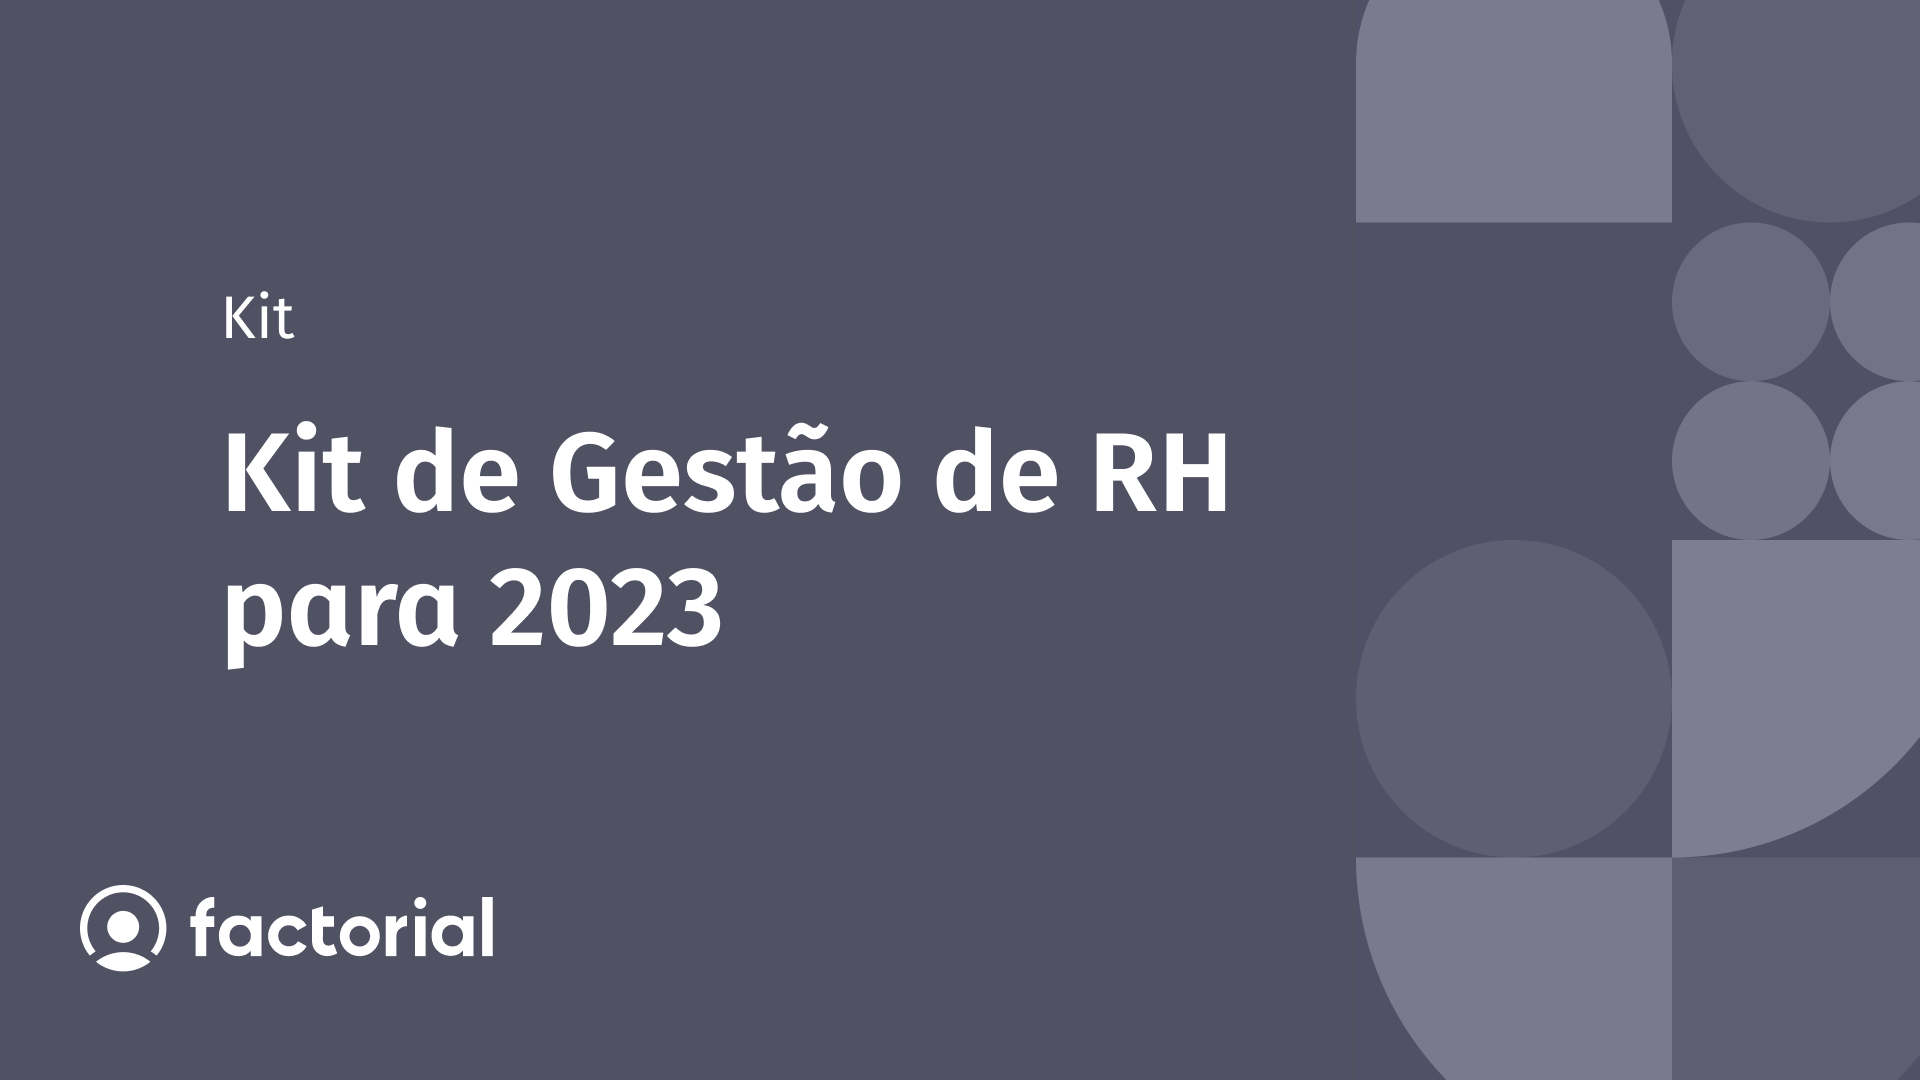 kit de gestão de rh para 2023